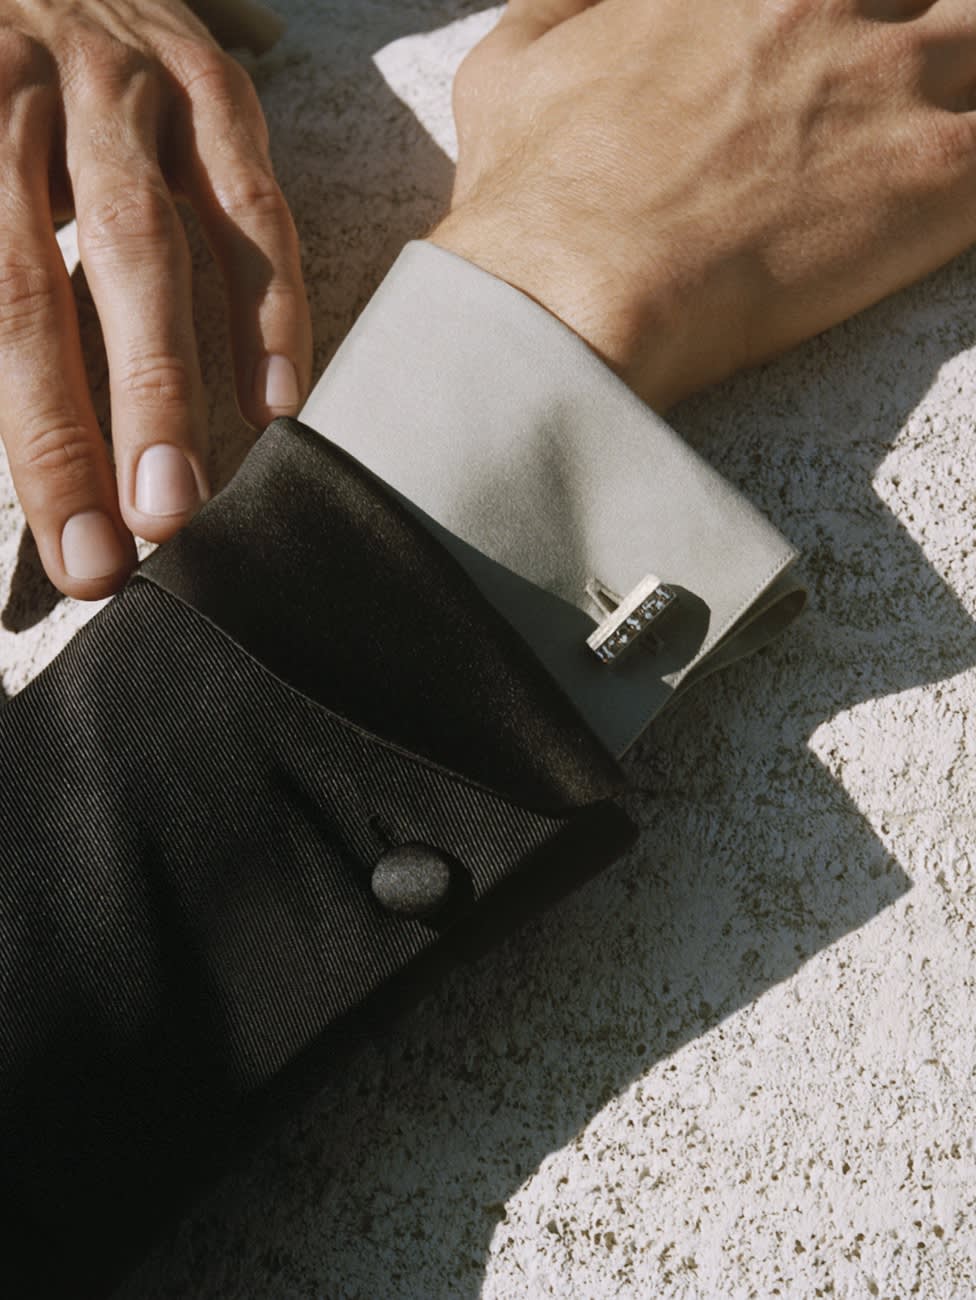 A Brioni silver cufflink